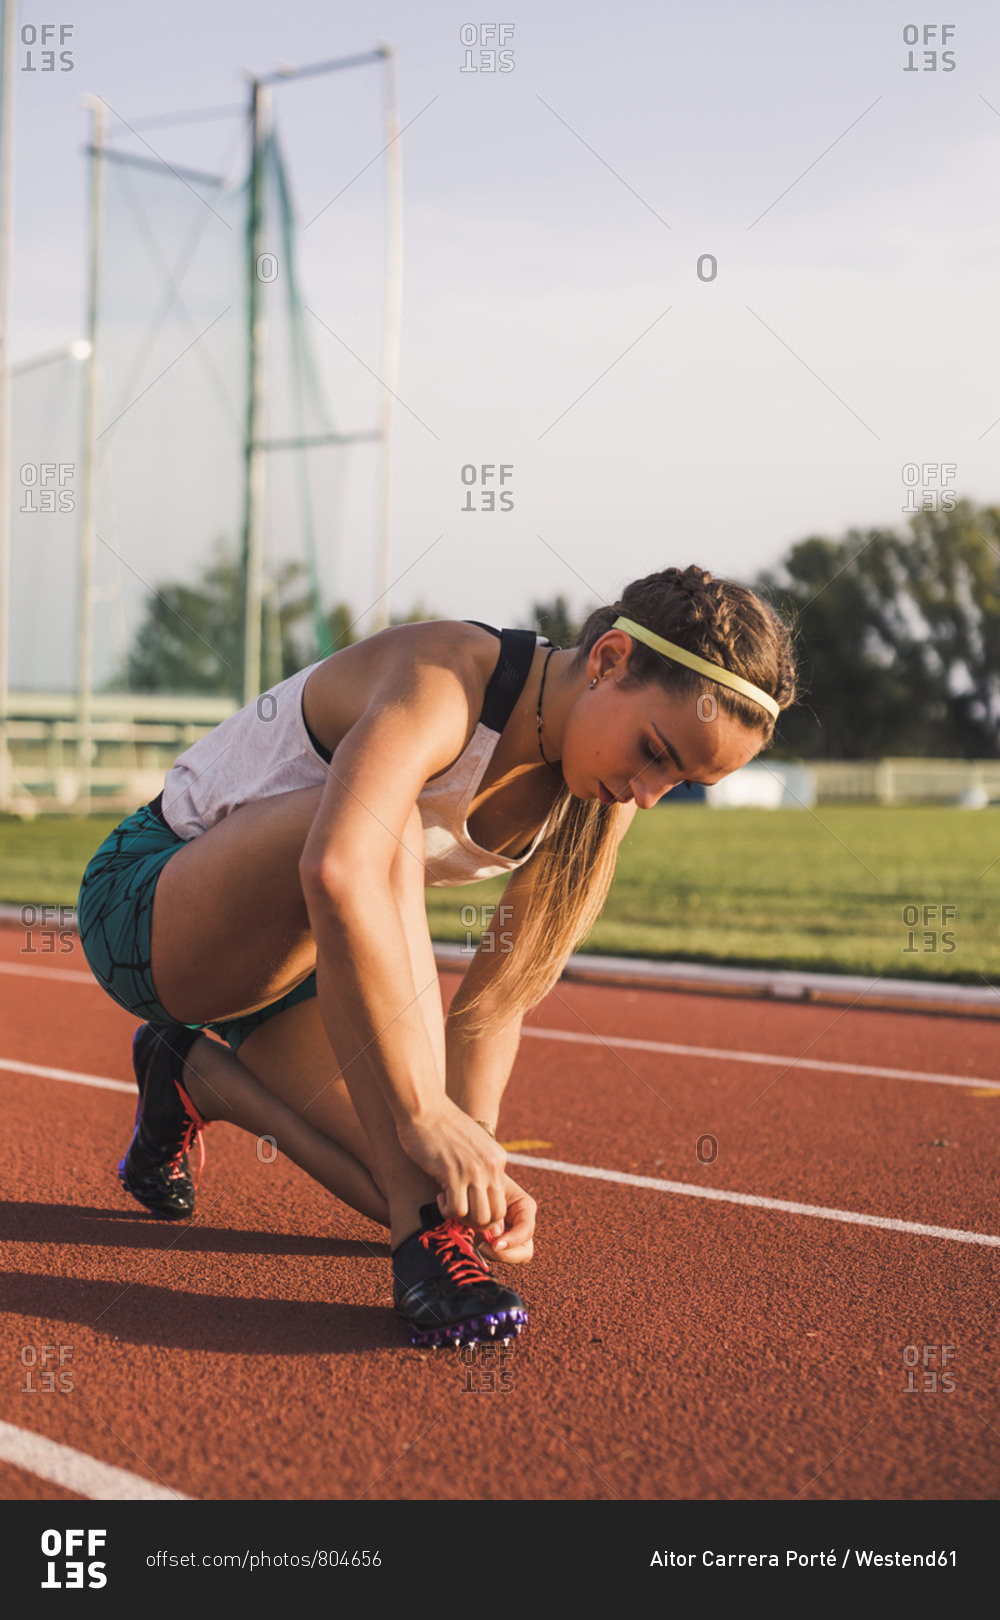 Female athlete tying shoe laces on tartan track